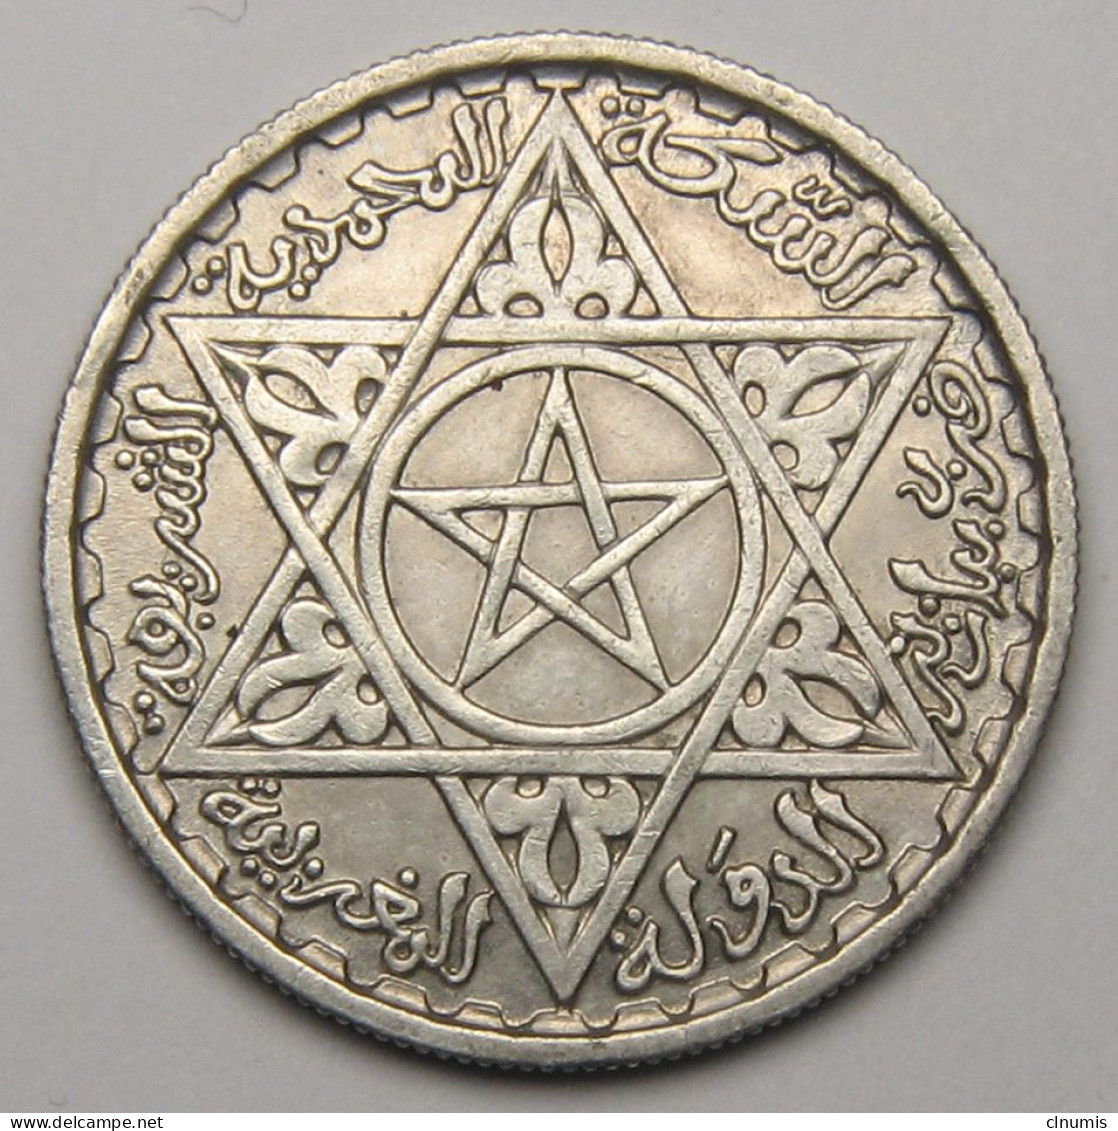 Maroc, Protectorat Français, 100 Francs 1953 (1372), Argent - Maroc